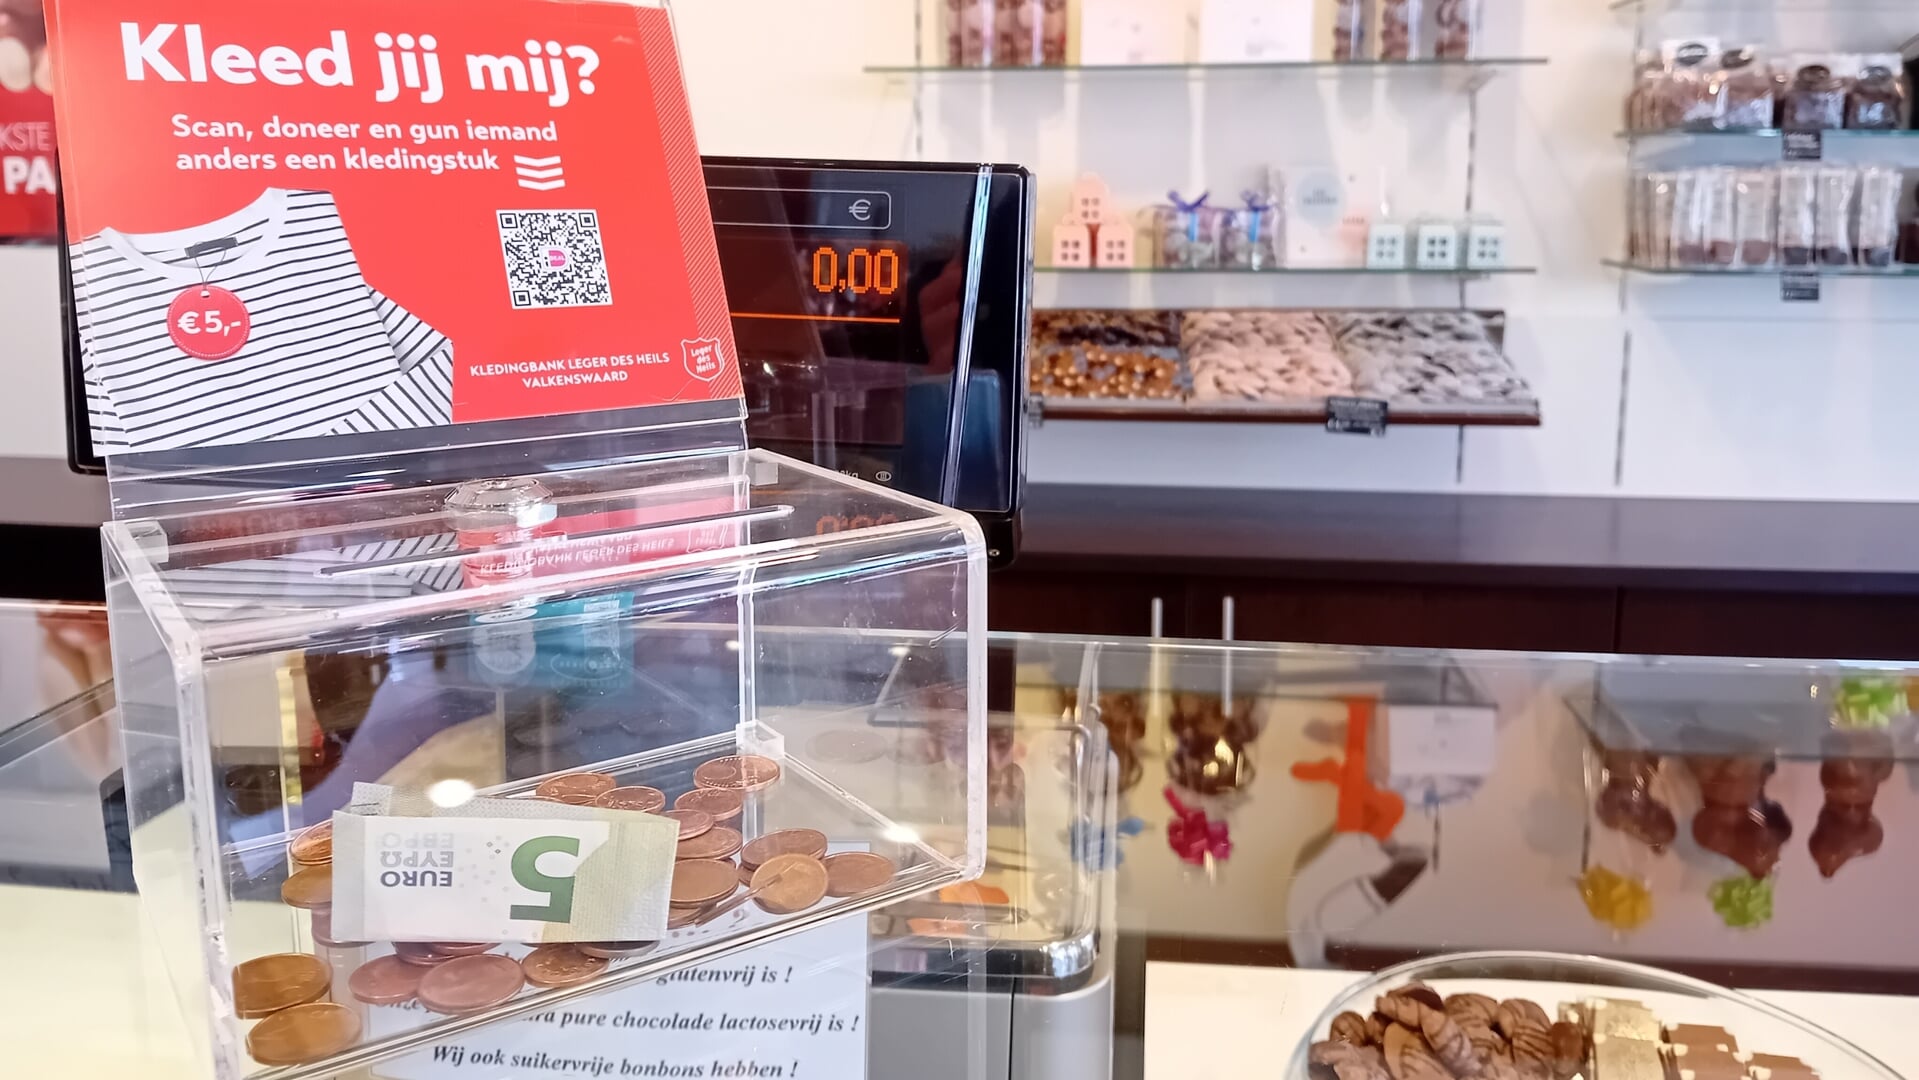 Een donatiebox voor de actie in een van de deelnemende winkels waar u minimaal 5 euro in kunt doneren.